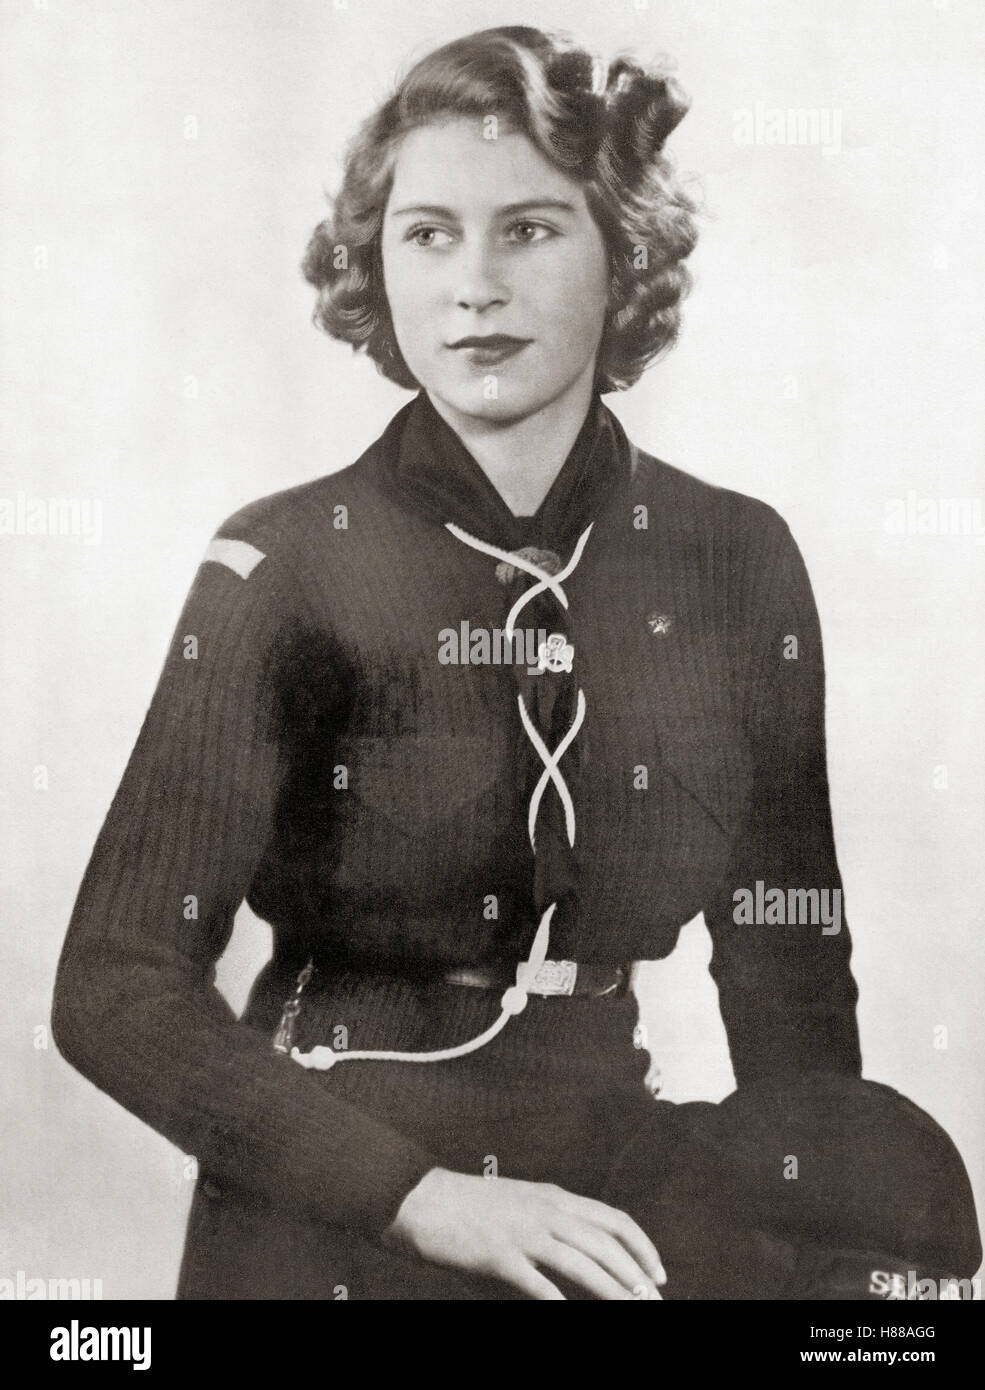 Princesse Elizabeth, future Elizabeth II, 1926 - 2022. Reine du Royaume-Uni, du Canada, de l'Australie et de la Nouvelle-Zélande. Vu ici en 1943 vêtu d'un uniforme de scout pour fille. D'une photo. Banque D'Images